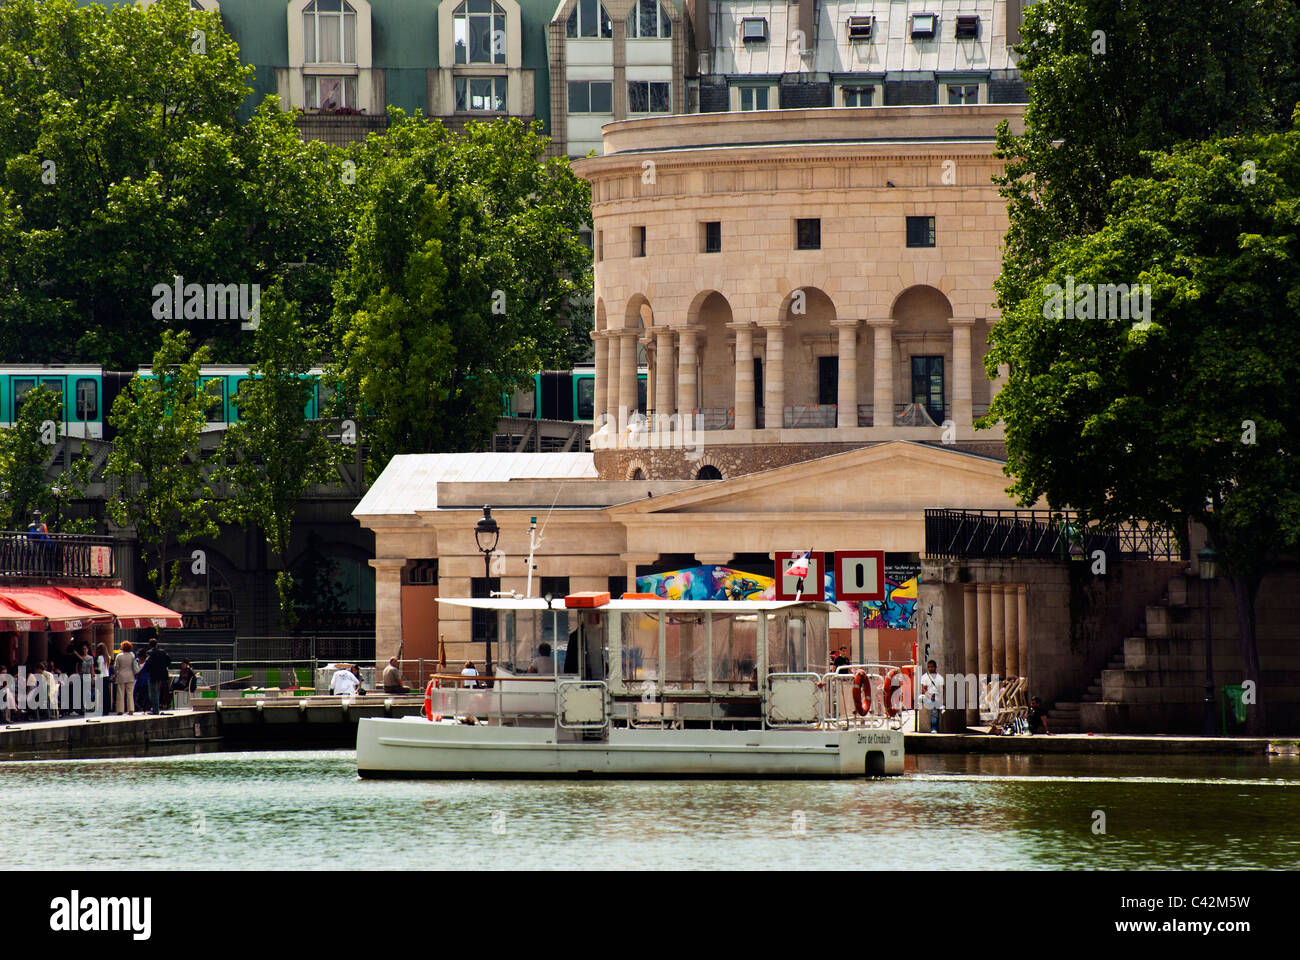 Barriere de la Villette on the canal St-Martin in Paris, France Stock Photo